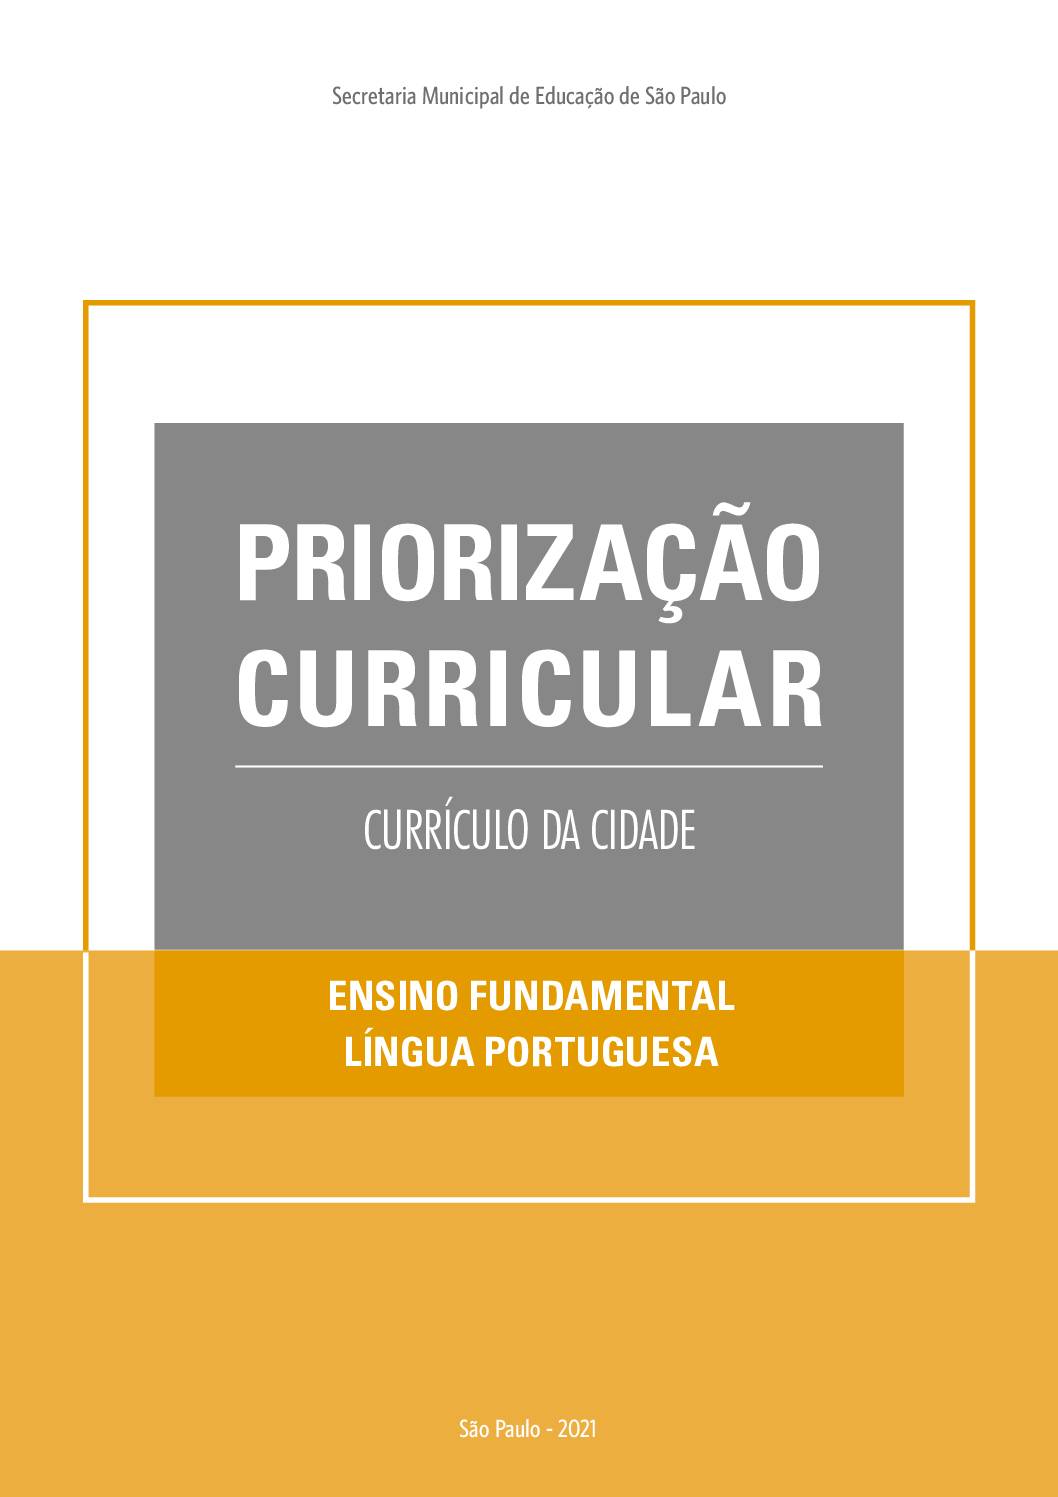 Publicação que apresenta os objetivos de aprendizagem prioritários do Currículo da Cidade de Língua Portuguesa para o Ensino Fundamental.